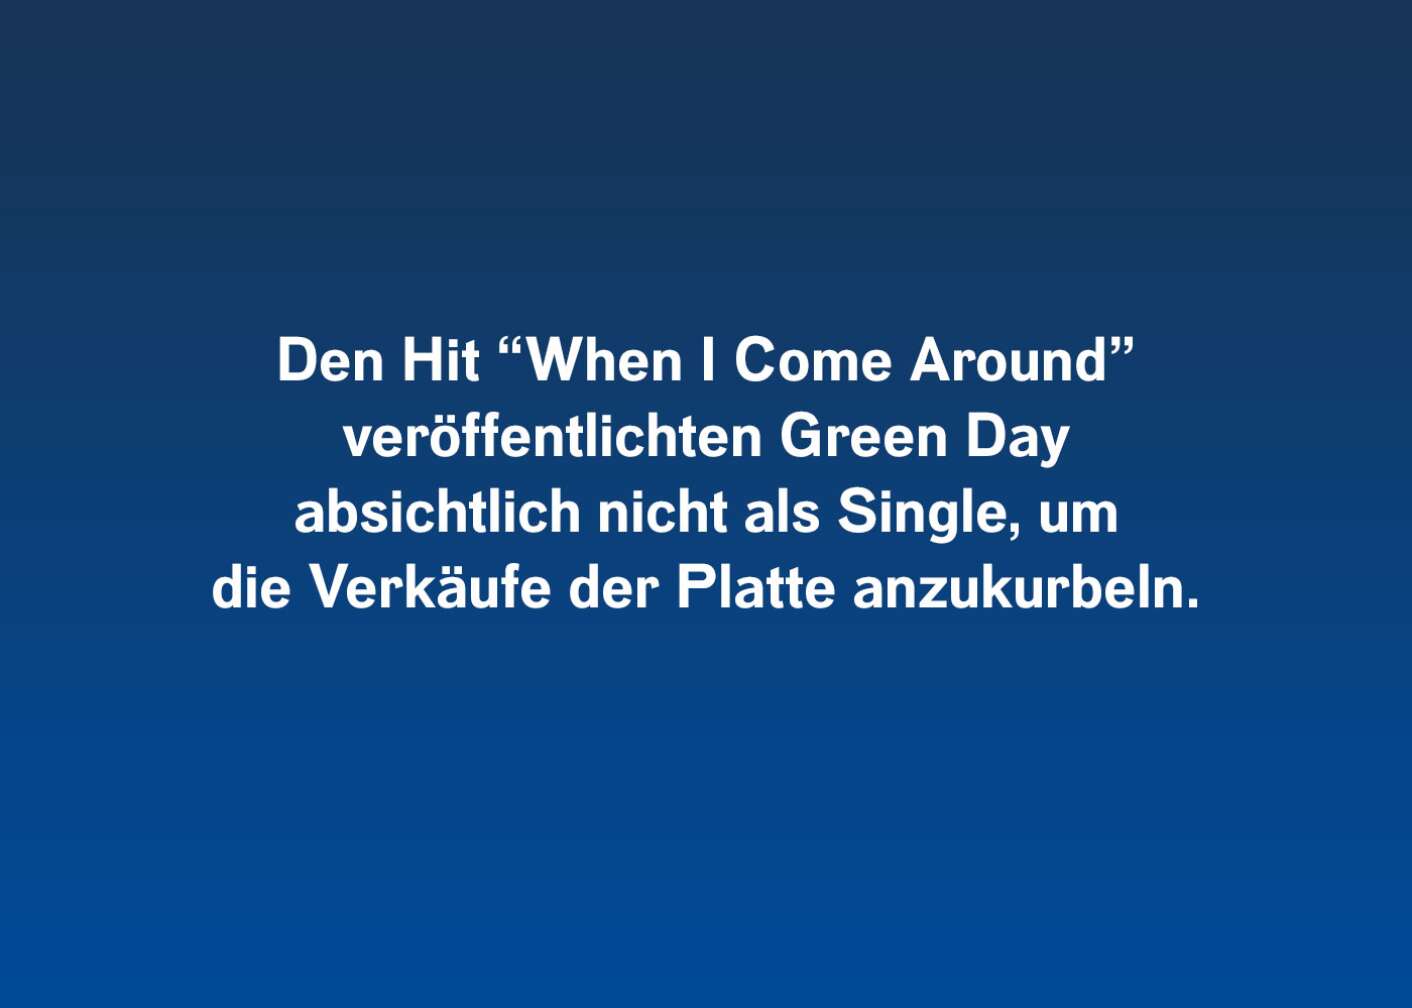 Den Hit "When I Come Around" veröffentlichten Green Day absichtlich nicht als Single, um die Verkäufe der Platte anzukurbeln.